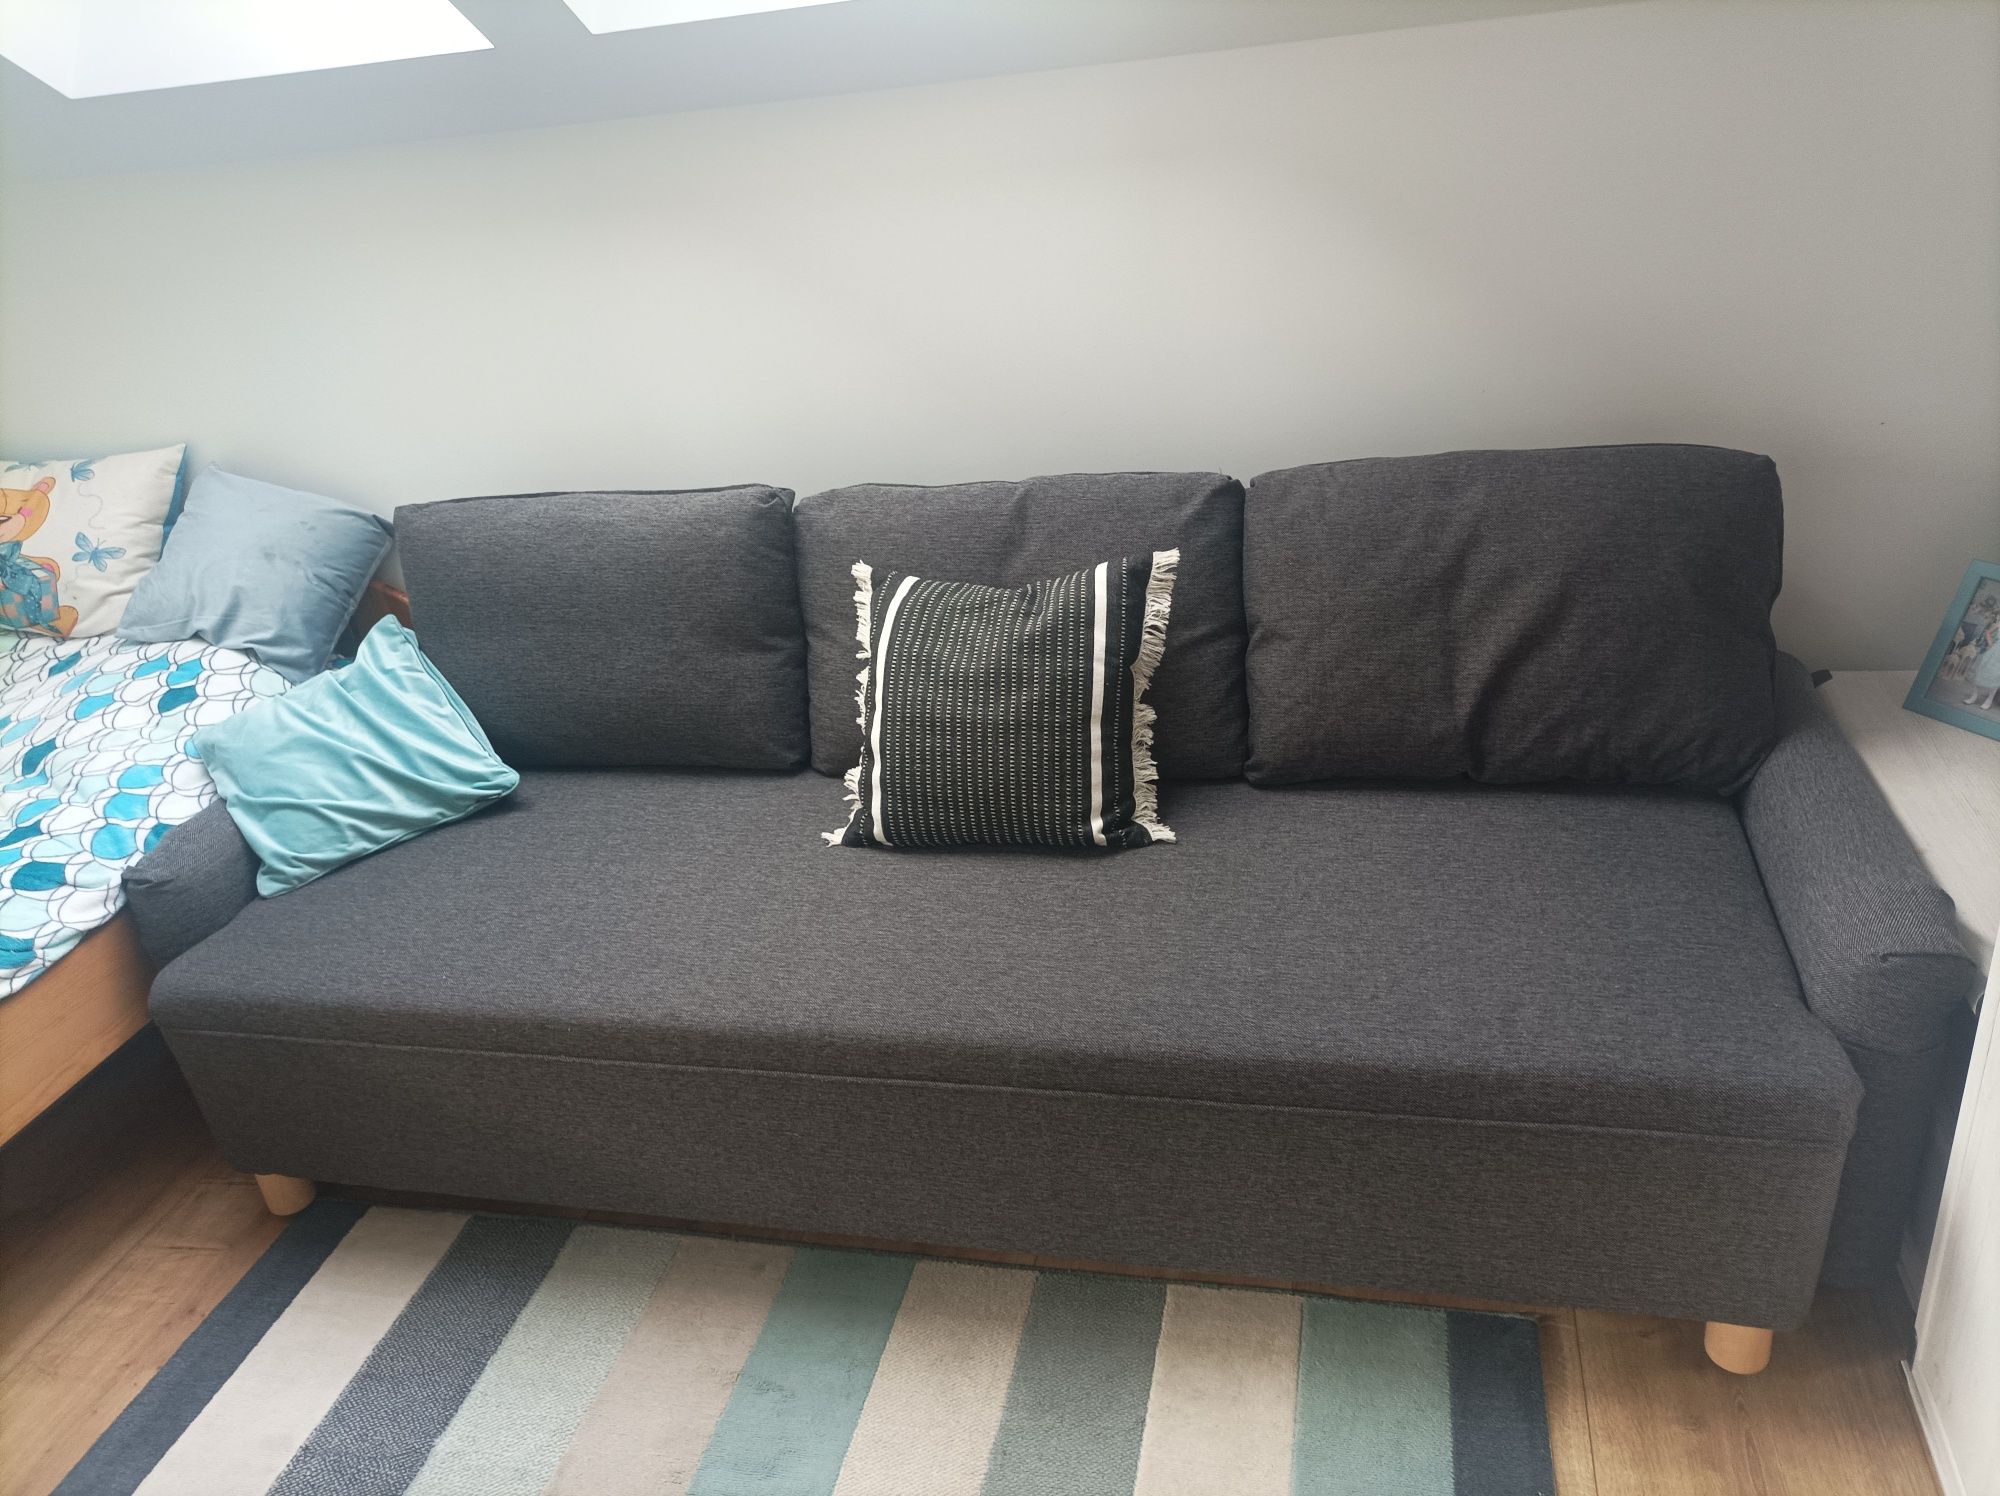 Grimhult Ikea sofa, kanapa rozkładana